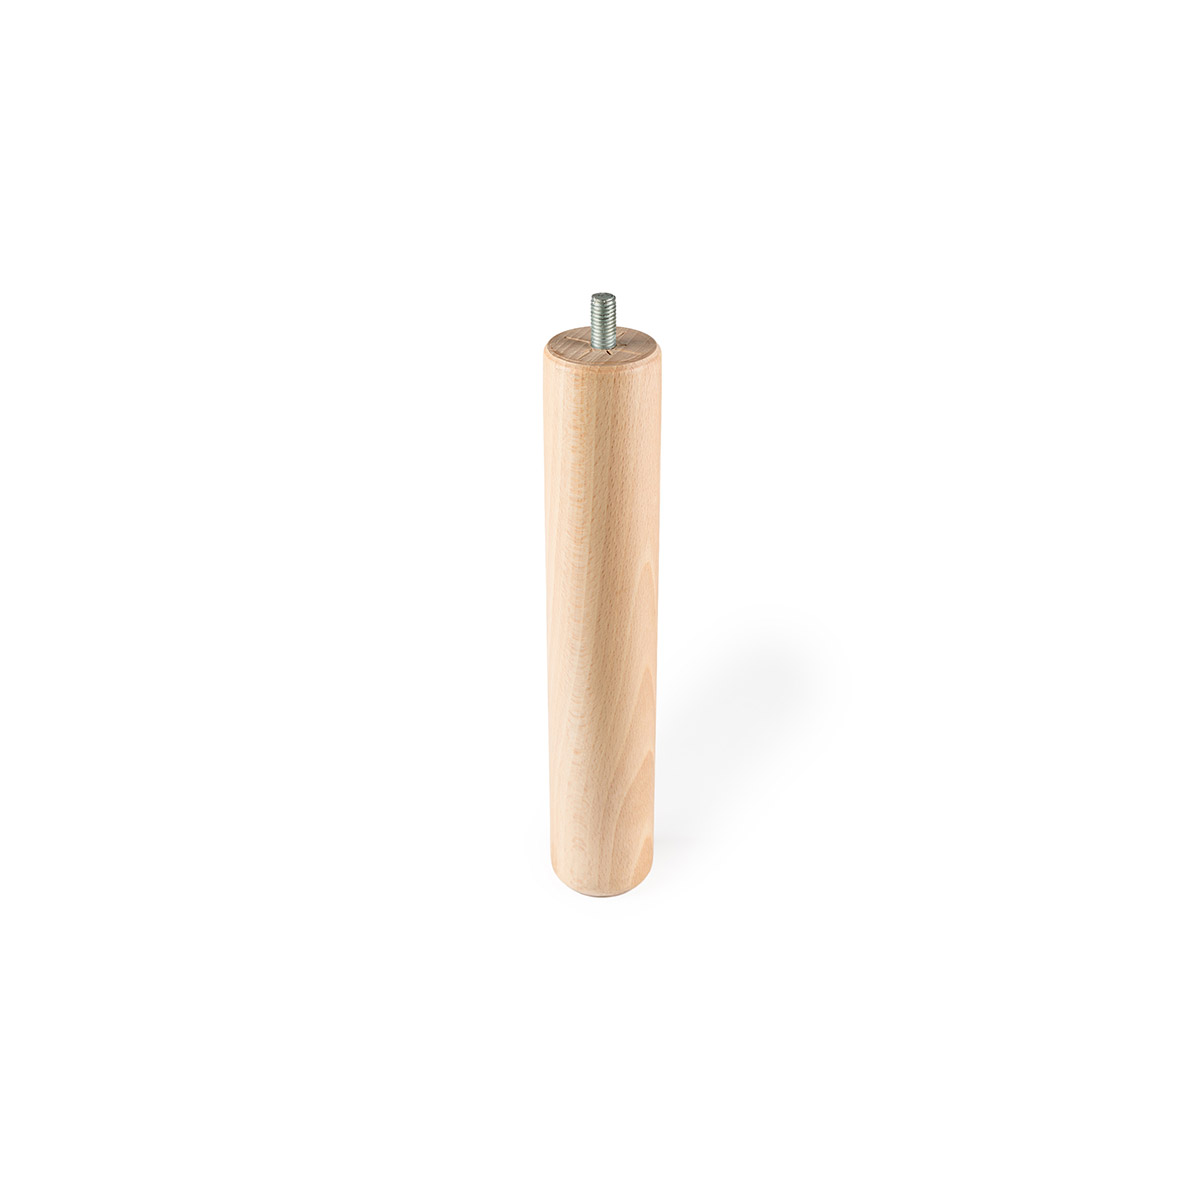 Pied cylindrique en bois d'une hauteur de 250 mm et finition hêtre transparent. Dimensions: 46x46x250 mm